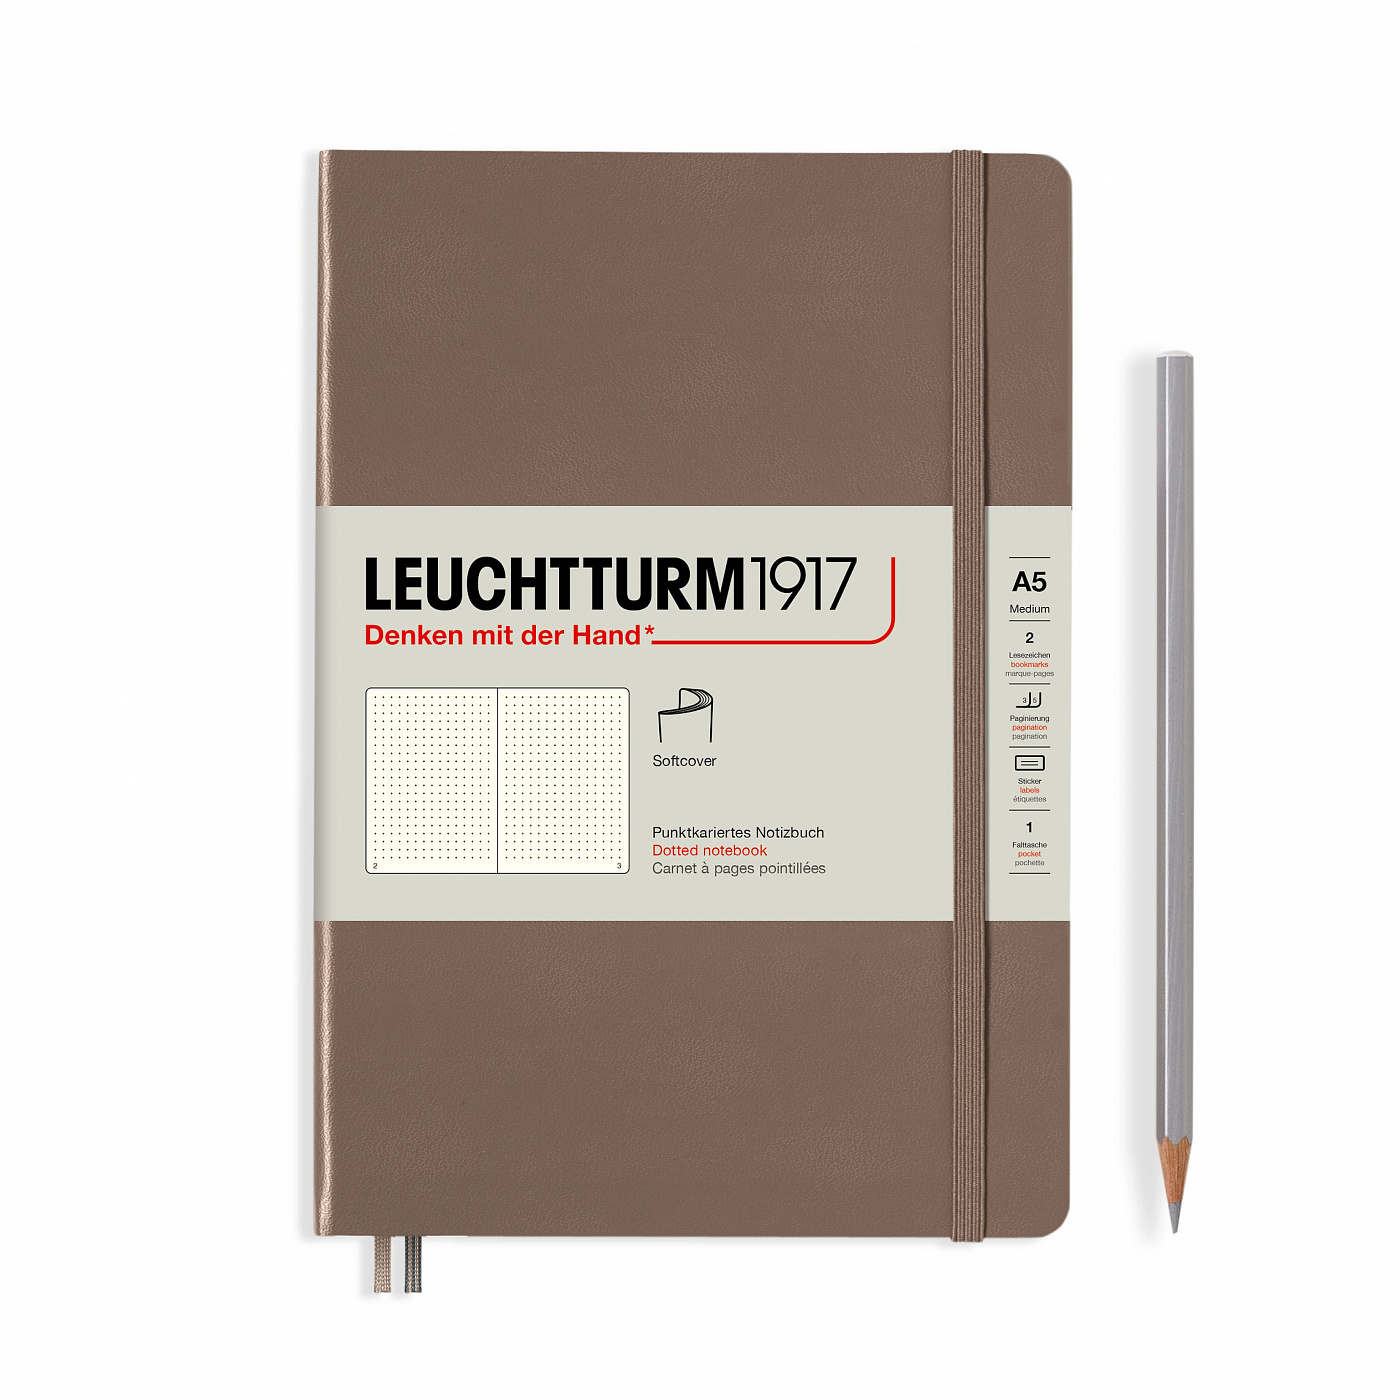 Записная книжка в точку Leuchtturm Rising Colours А5 123 стр., мягкая обложка теплая земля Lecht-363411 - фото 1